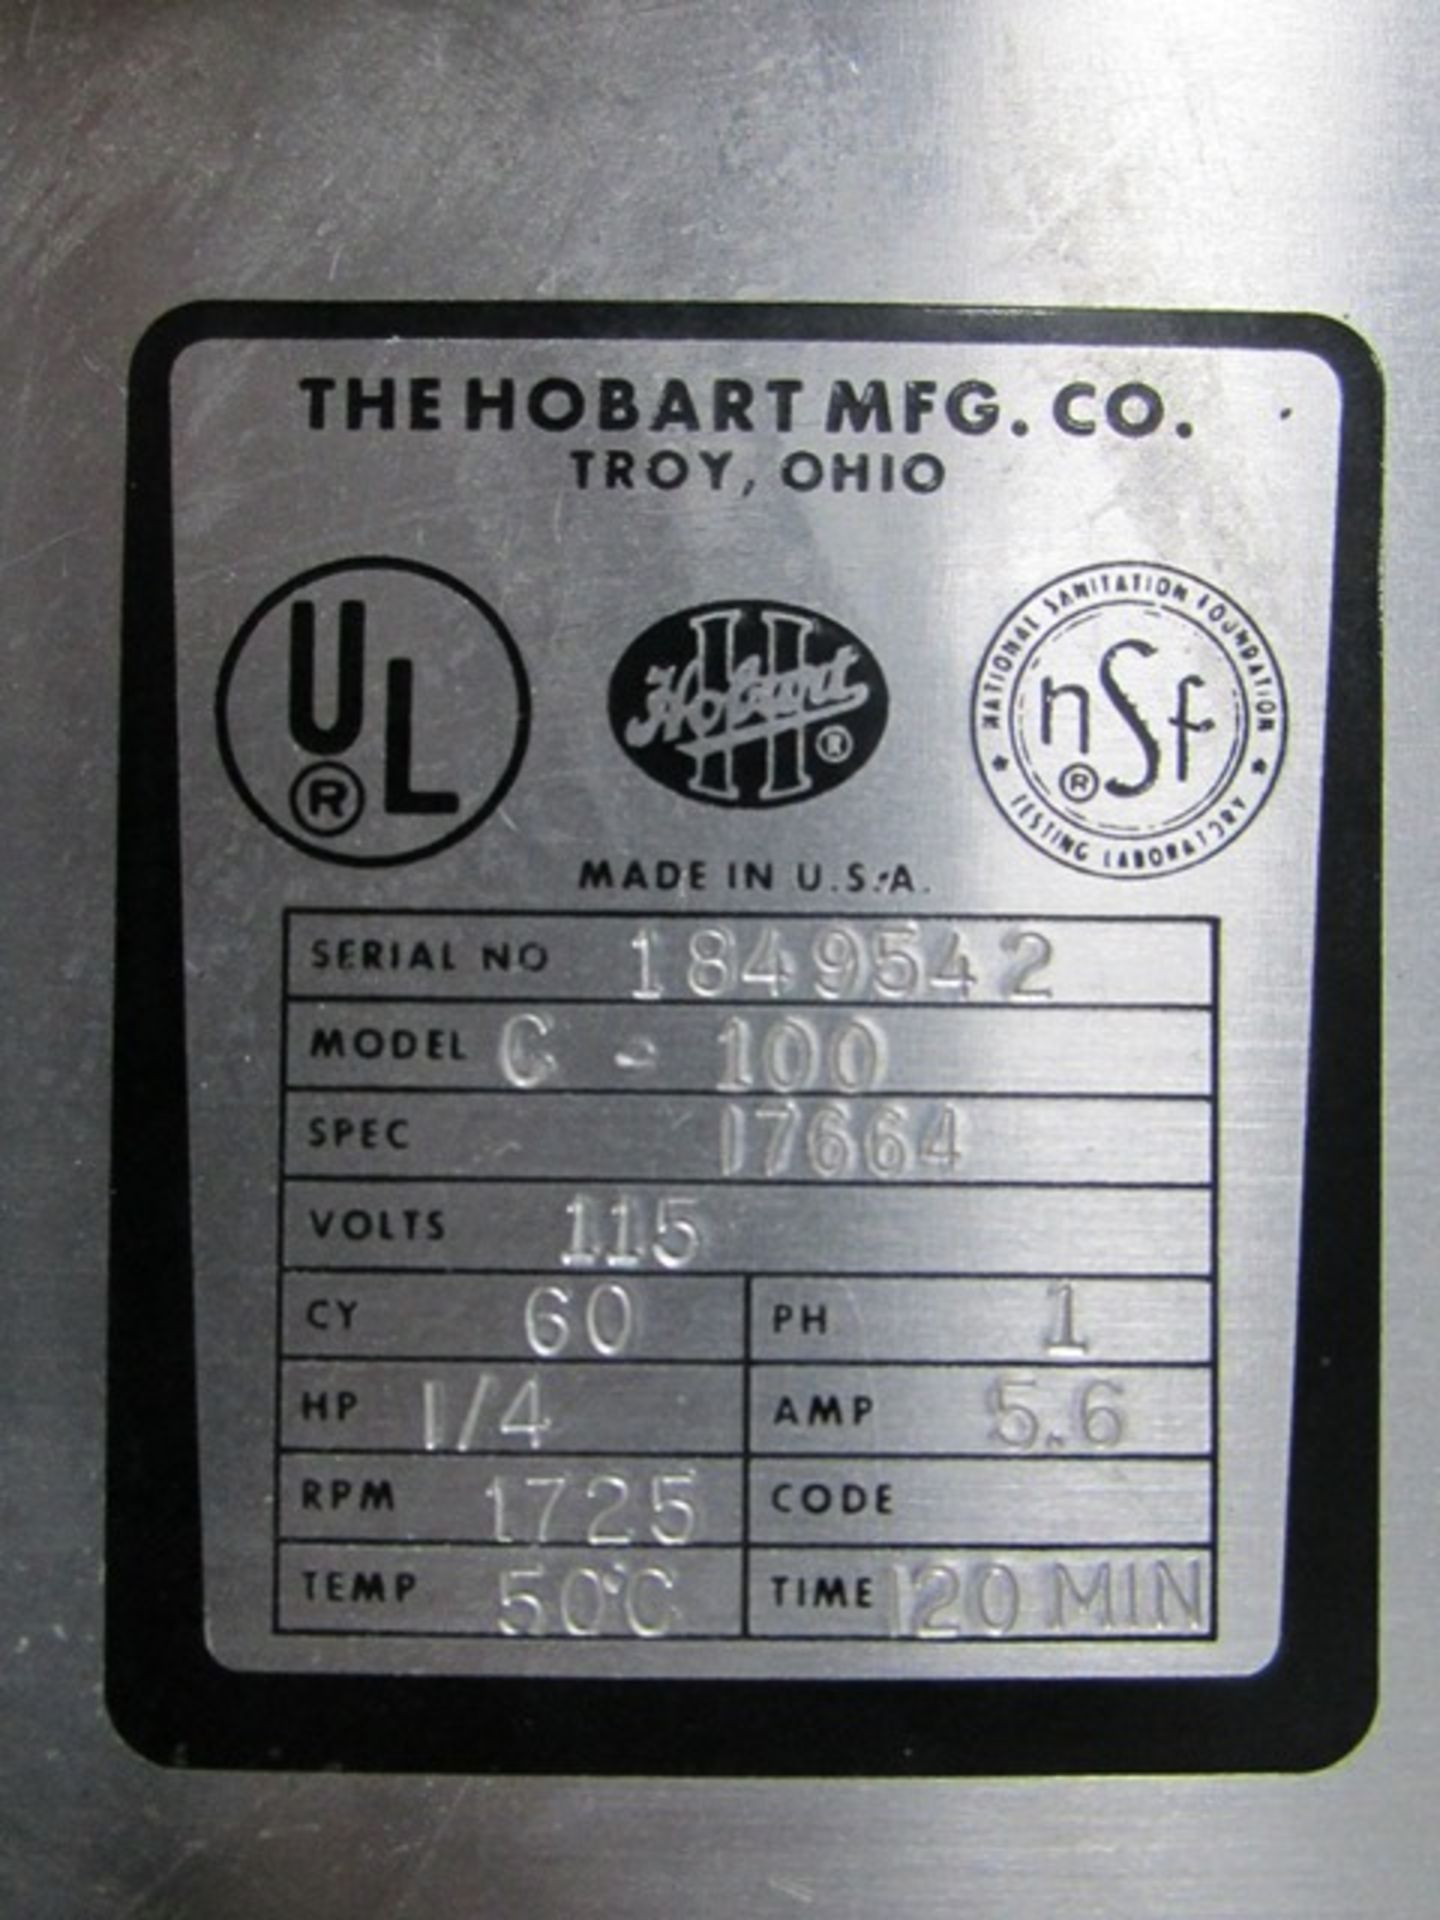 10 QT HOBART MIXER, MODEL C-100 - Image 7 of 7